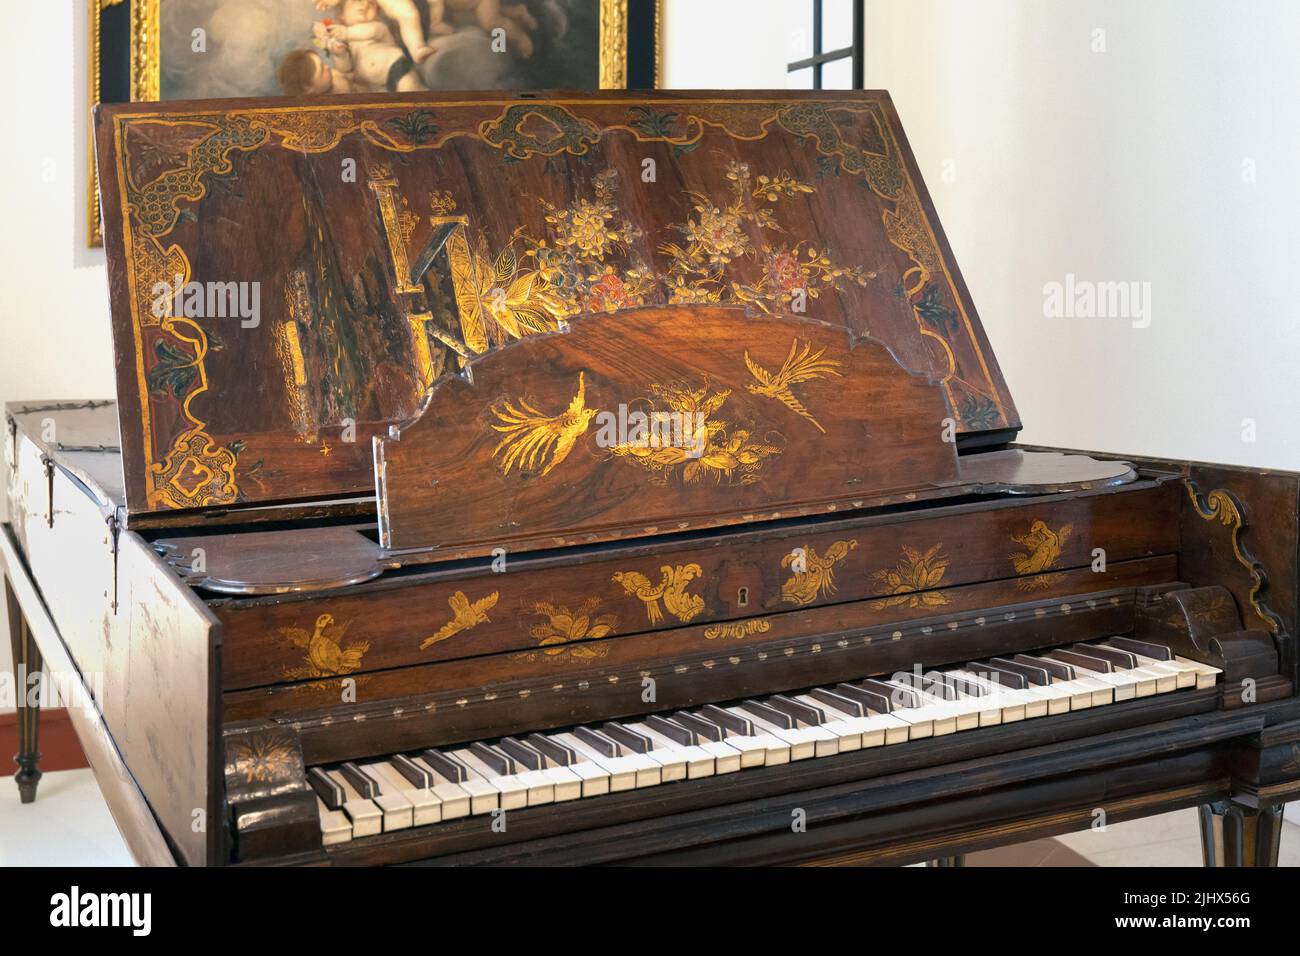 Piano, vers 1750, attribué à Francisco Perez Mirabel qui était actif à Séville, Espagne au milieu du siècle 18th. Exposé dans le Museo de belles Banque D'Images